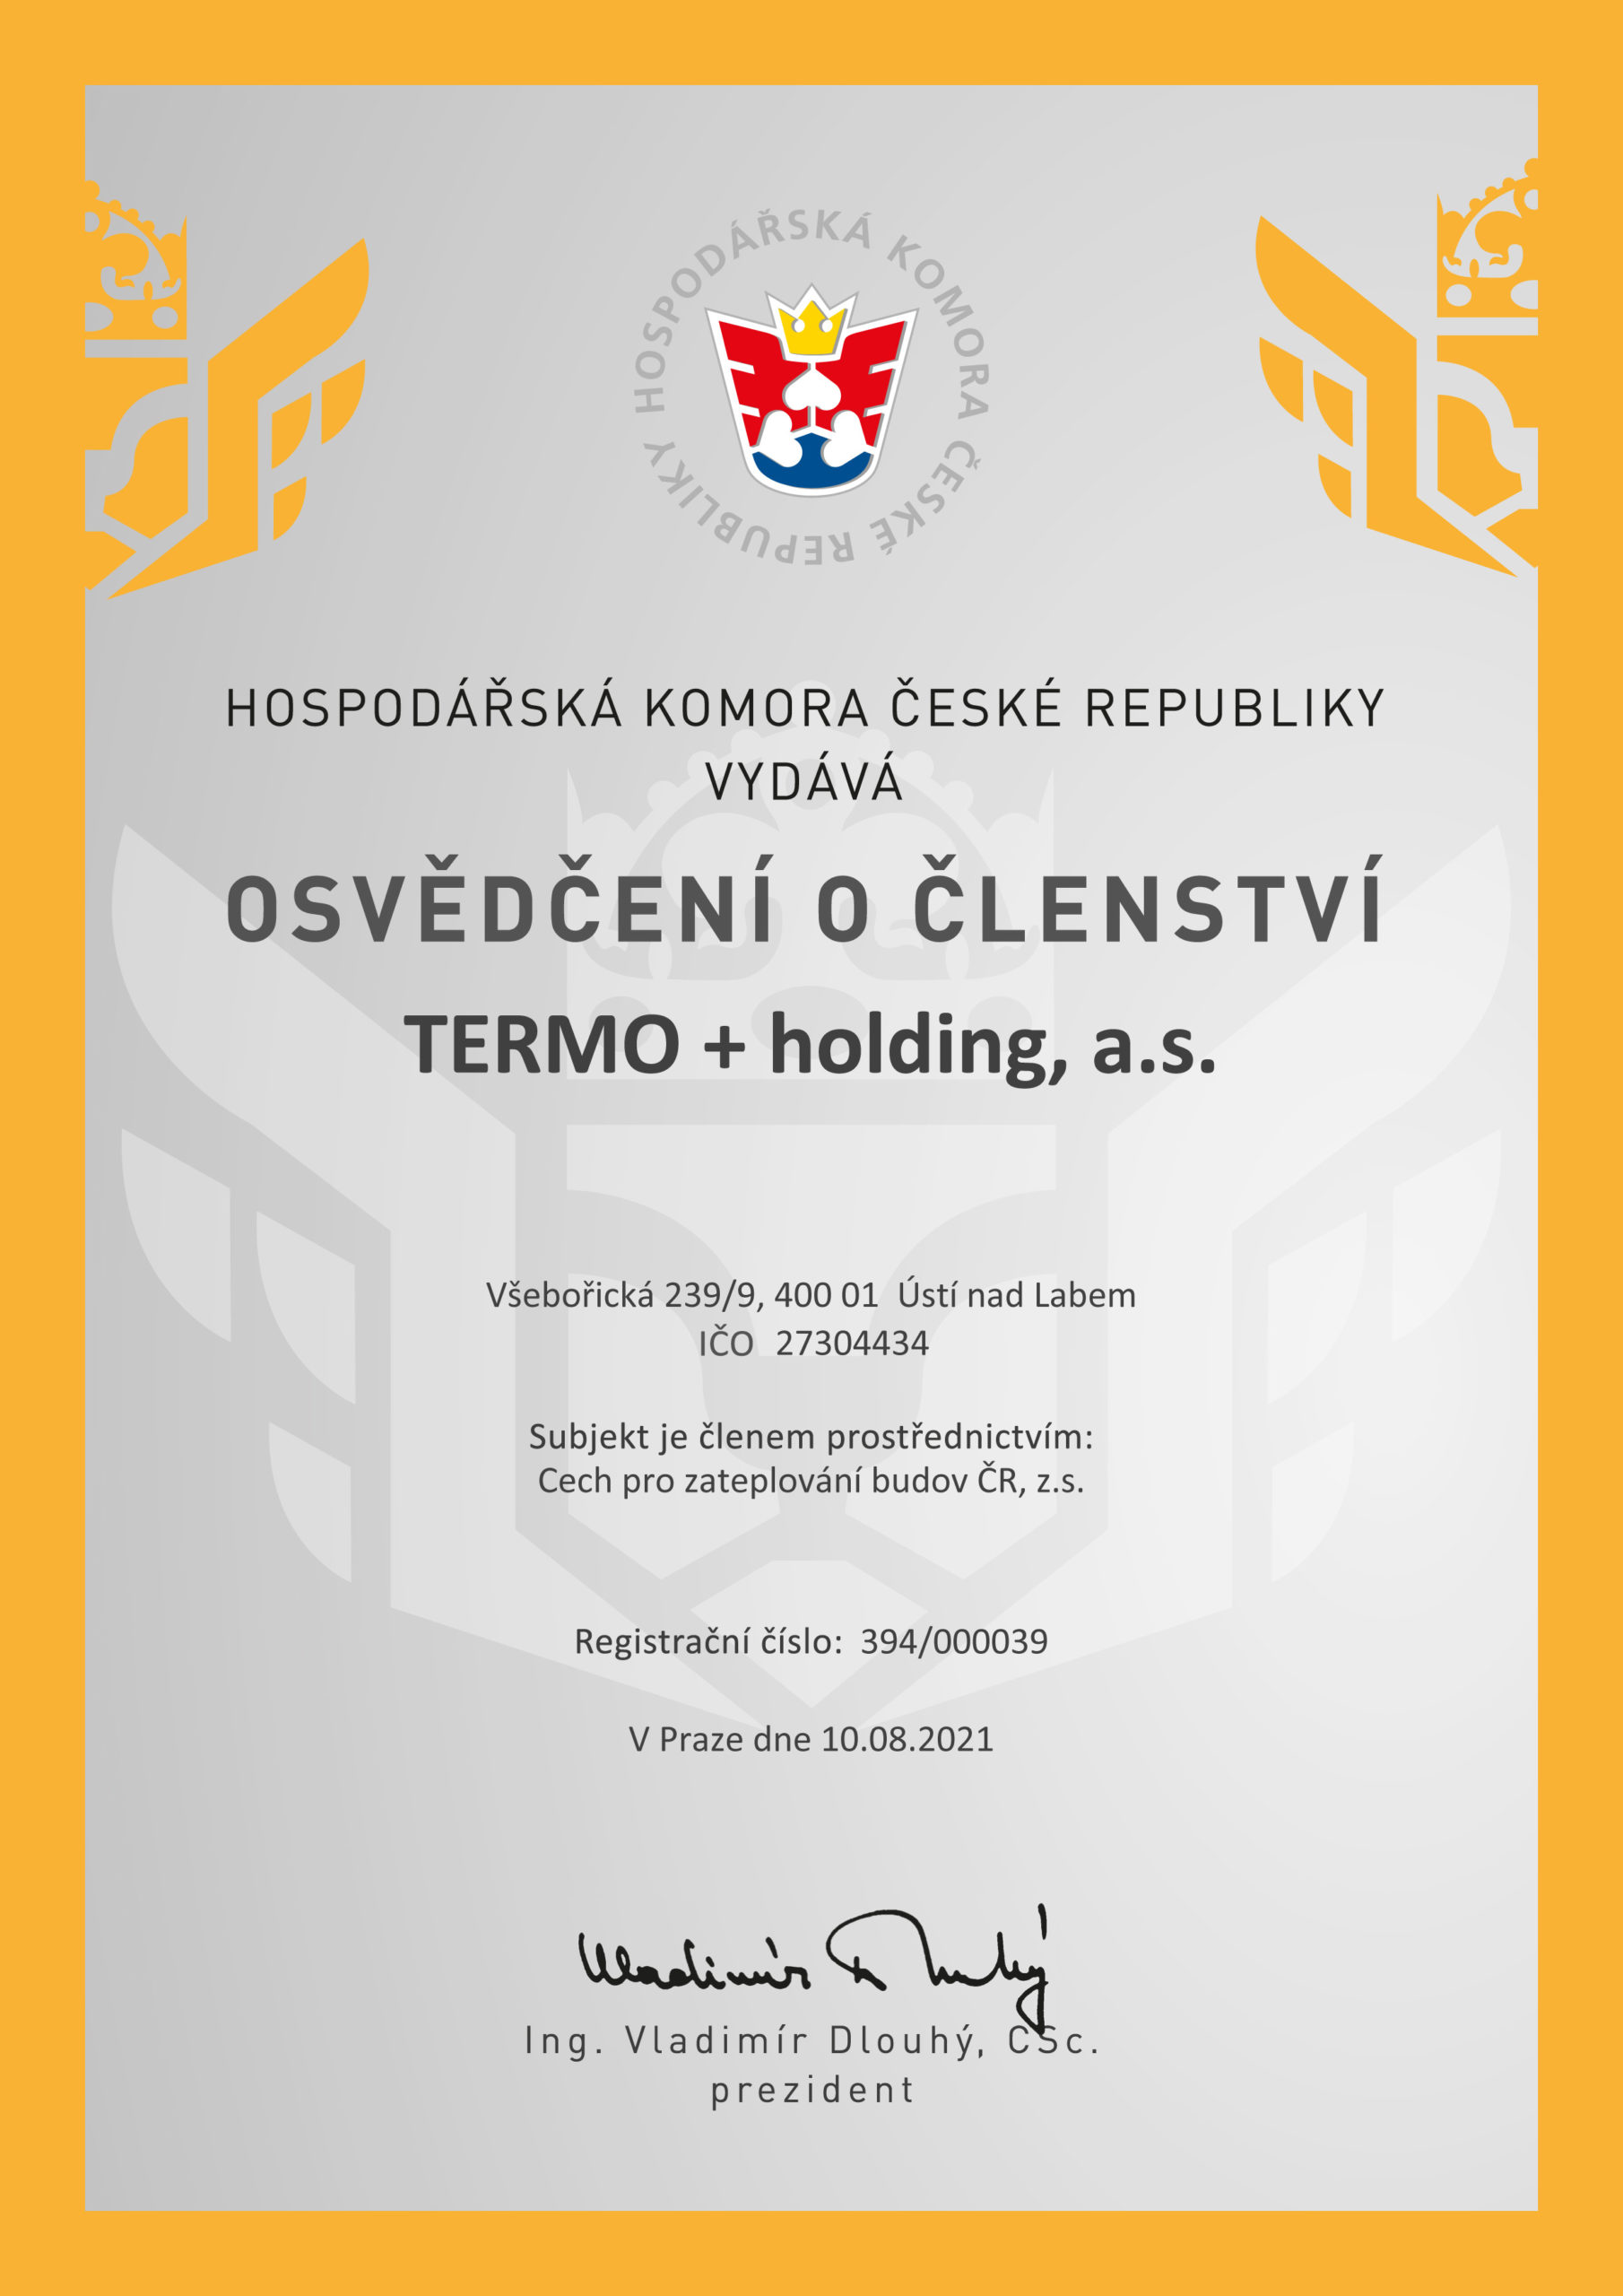 Jsme členem Hospodářské komory ČR